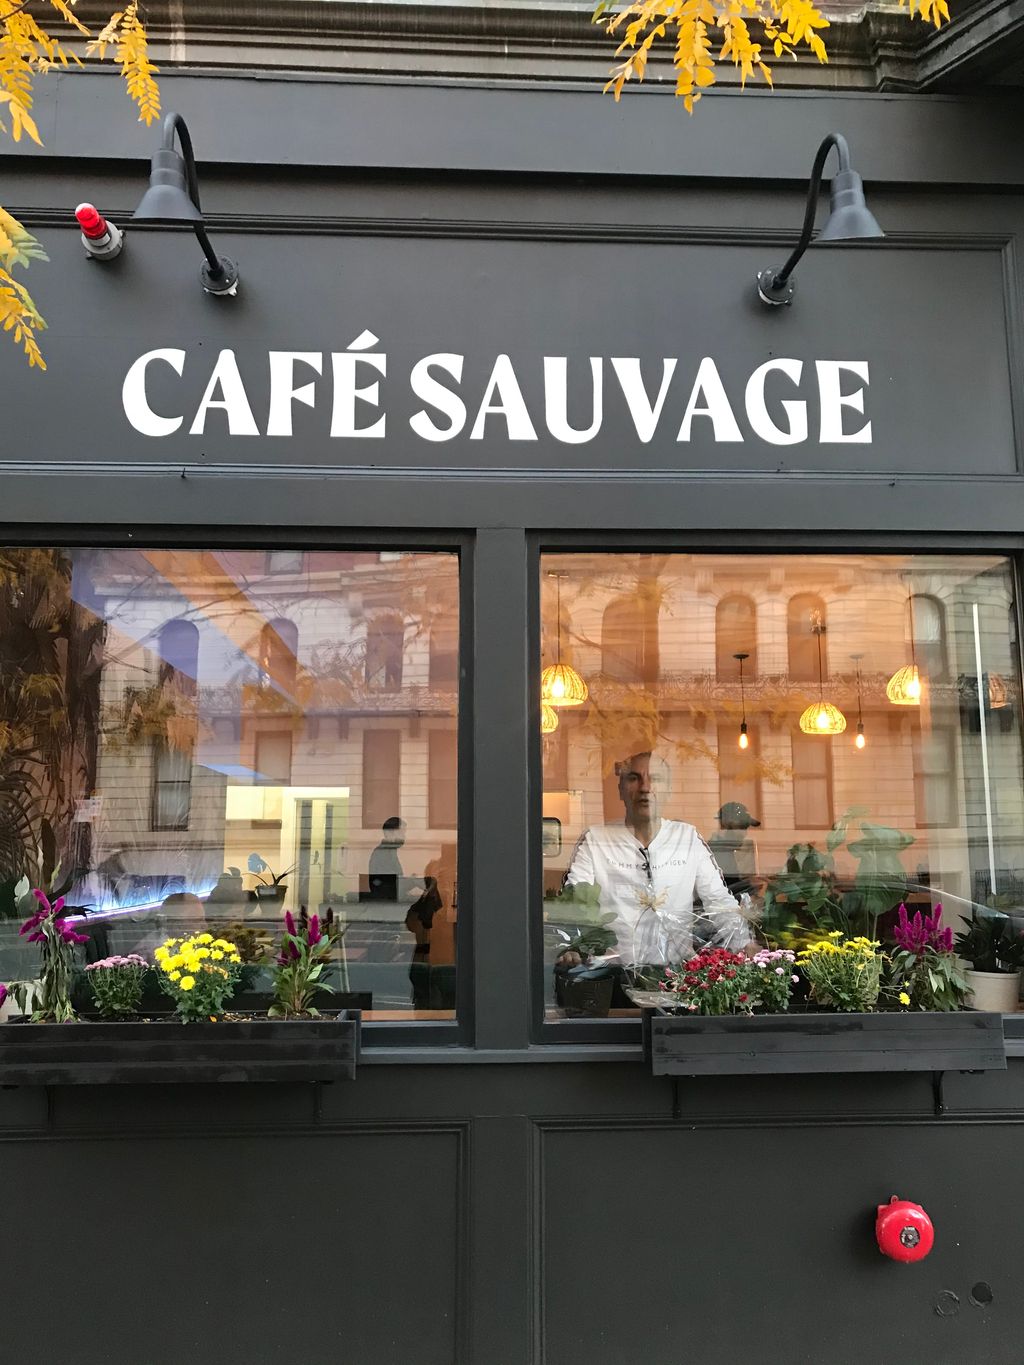 Cafe-sauvage